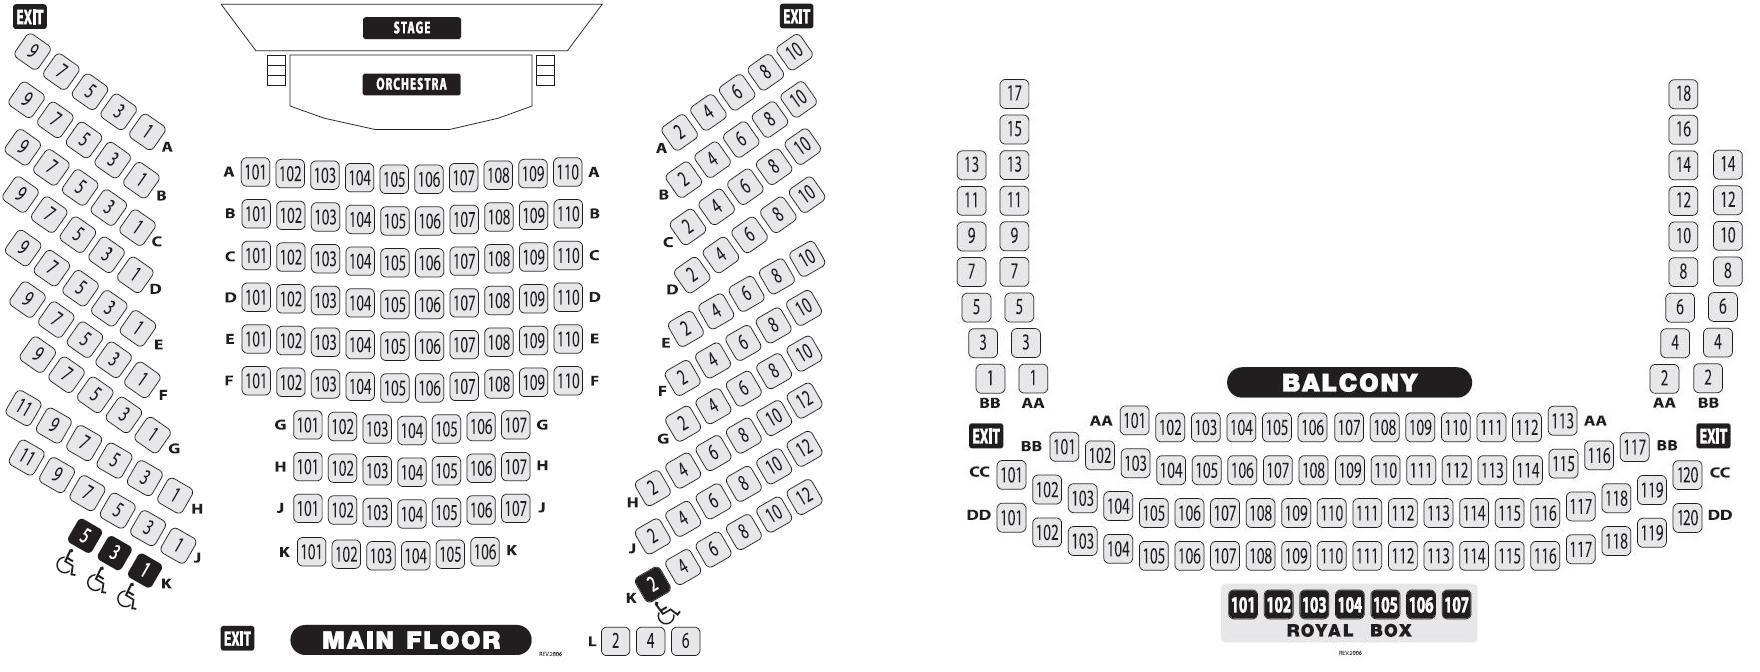 Drury Lane Theater Seating Chart